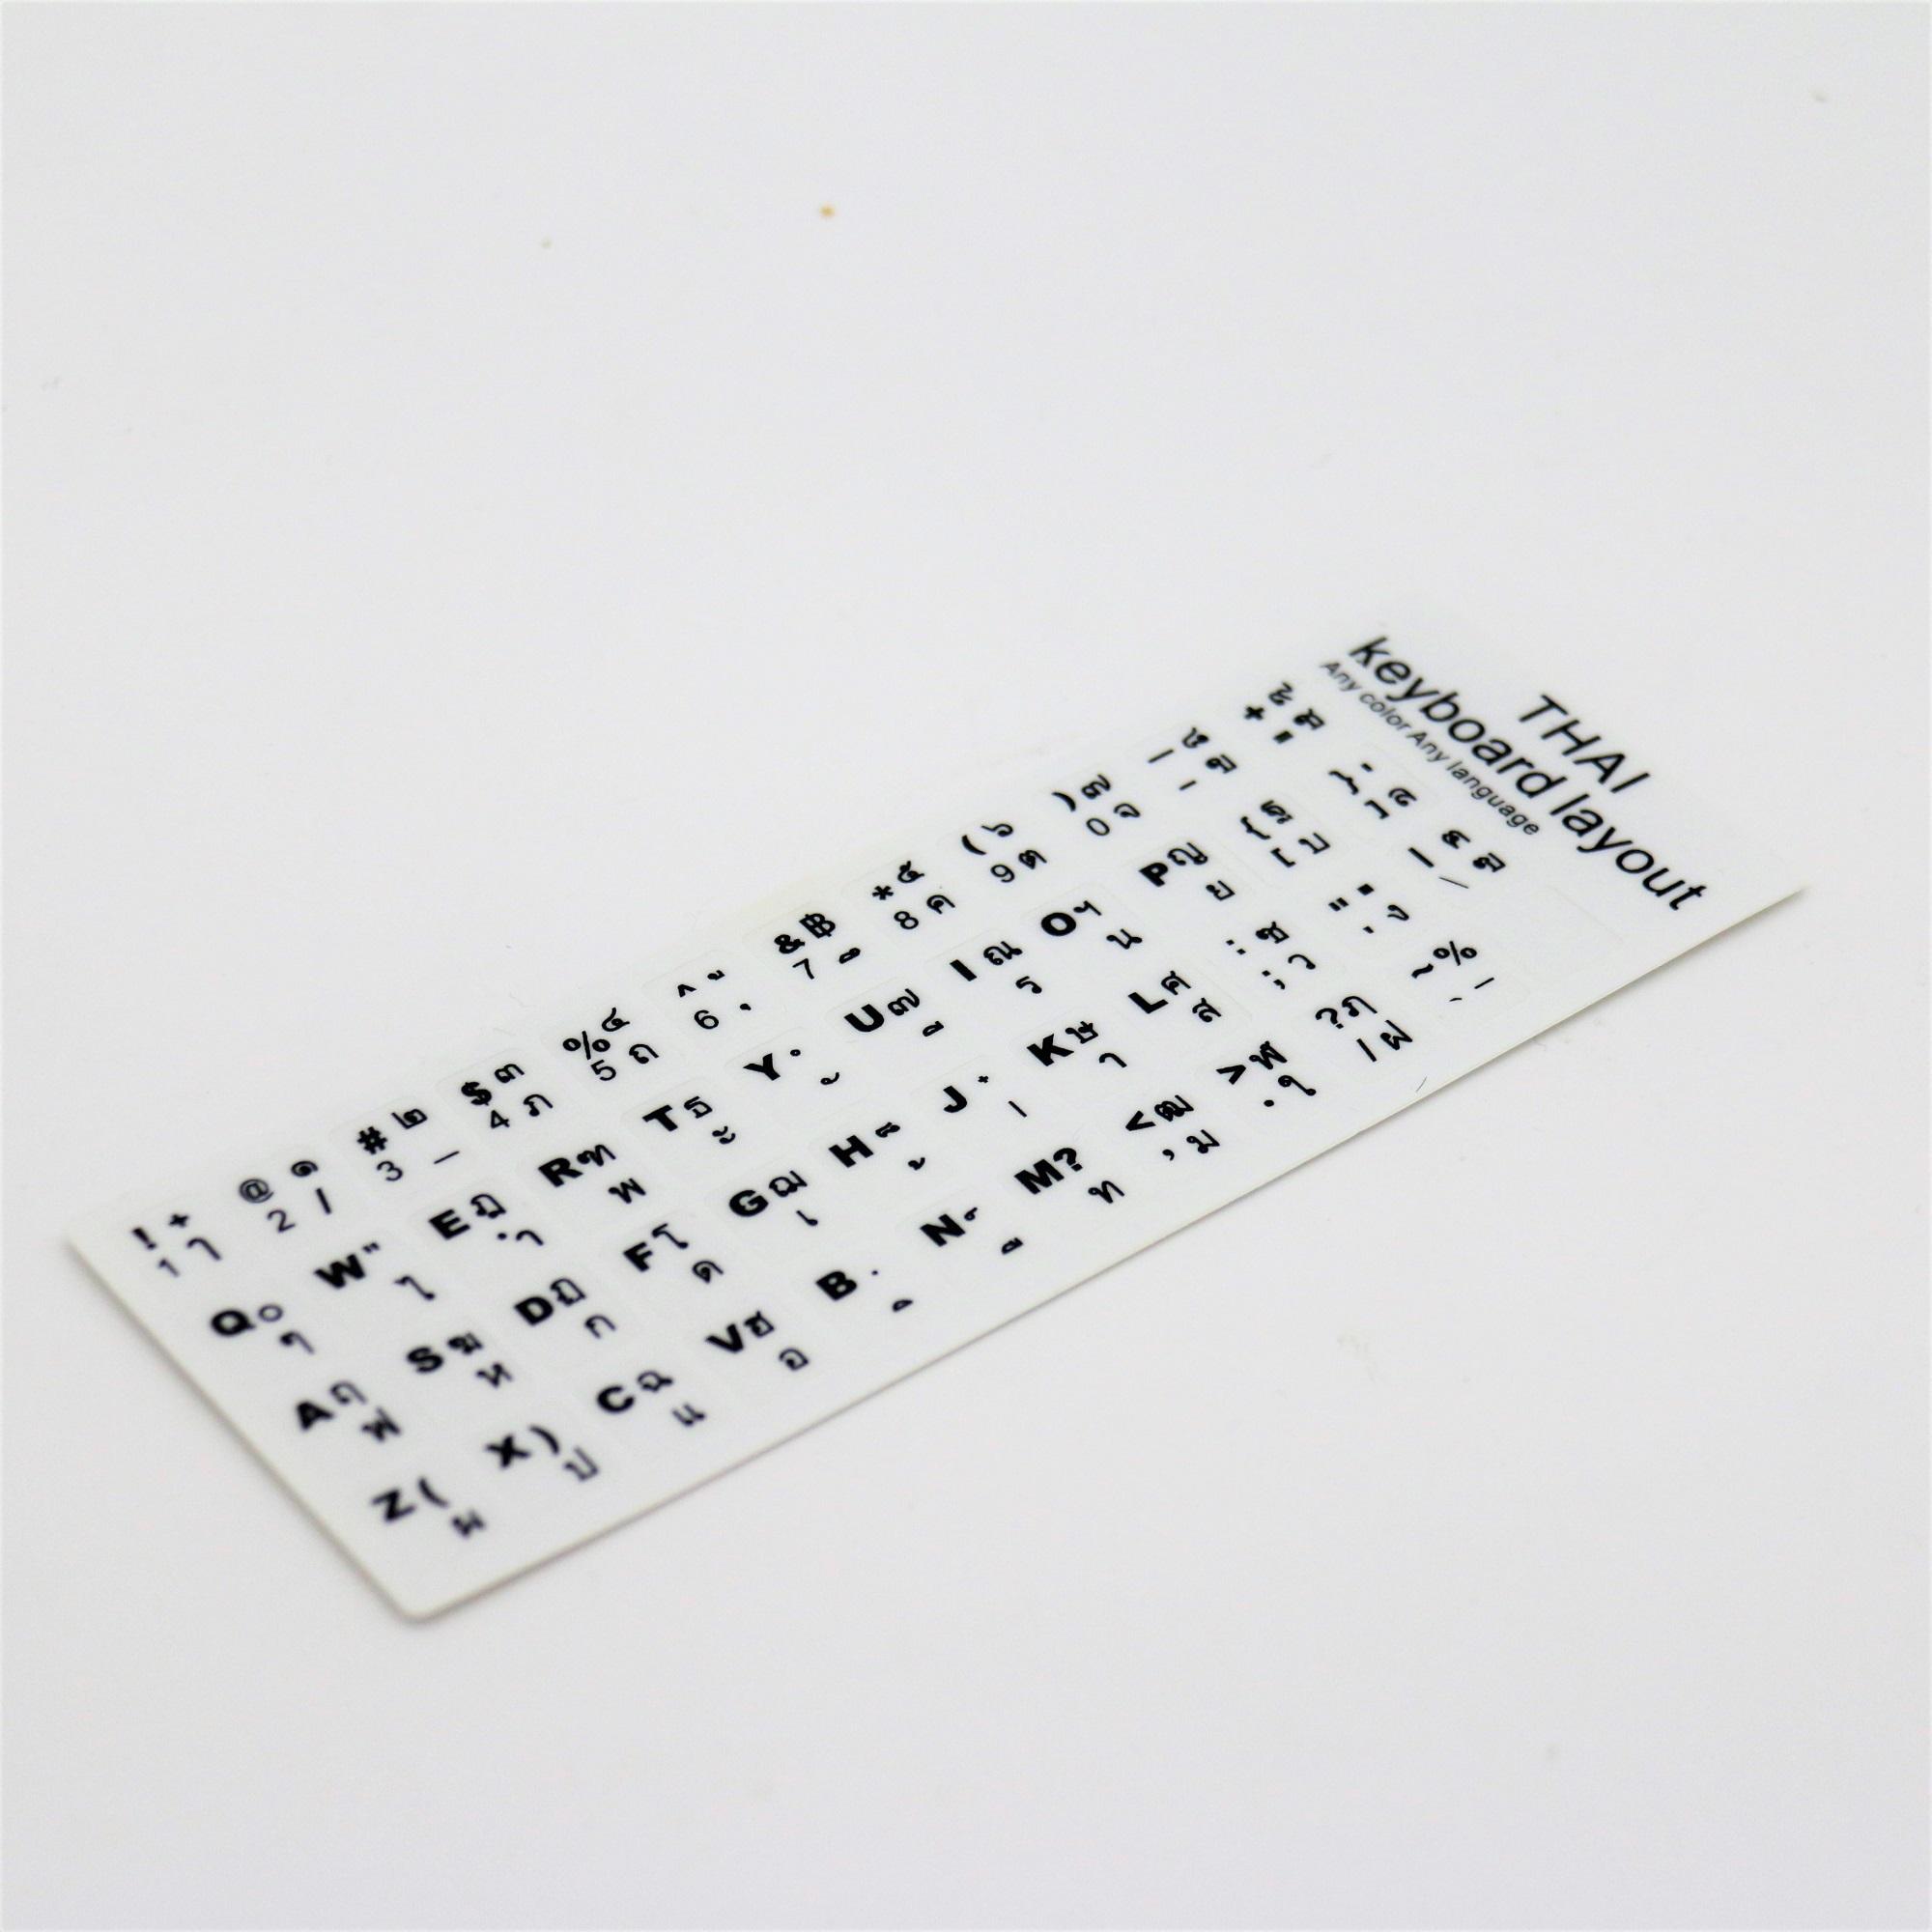 Sticker Keyboard Thai / English แบบ3M สติกเกอร์ ภาษาไทย-อังกฤษสำหรับติดคีย์บอร์ด (White)